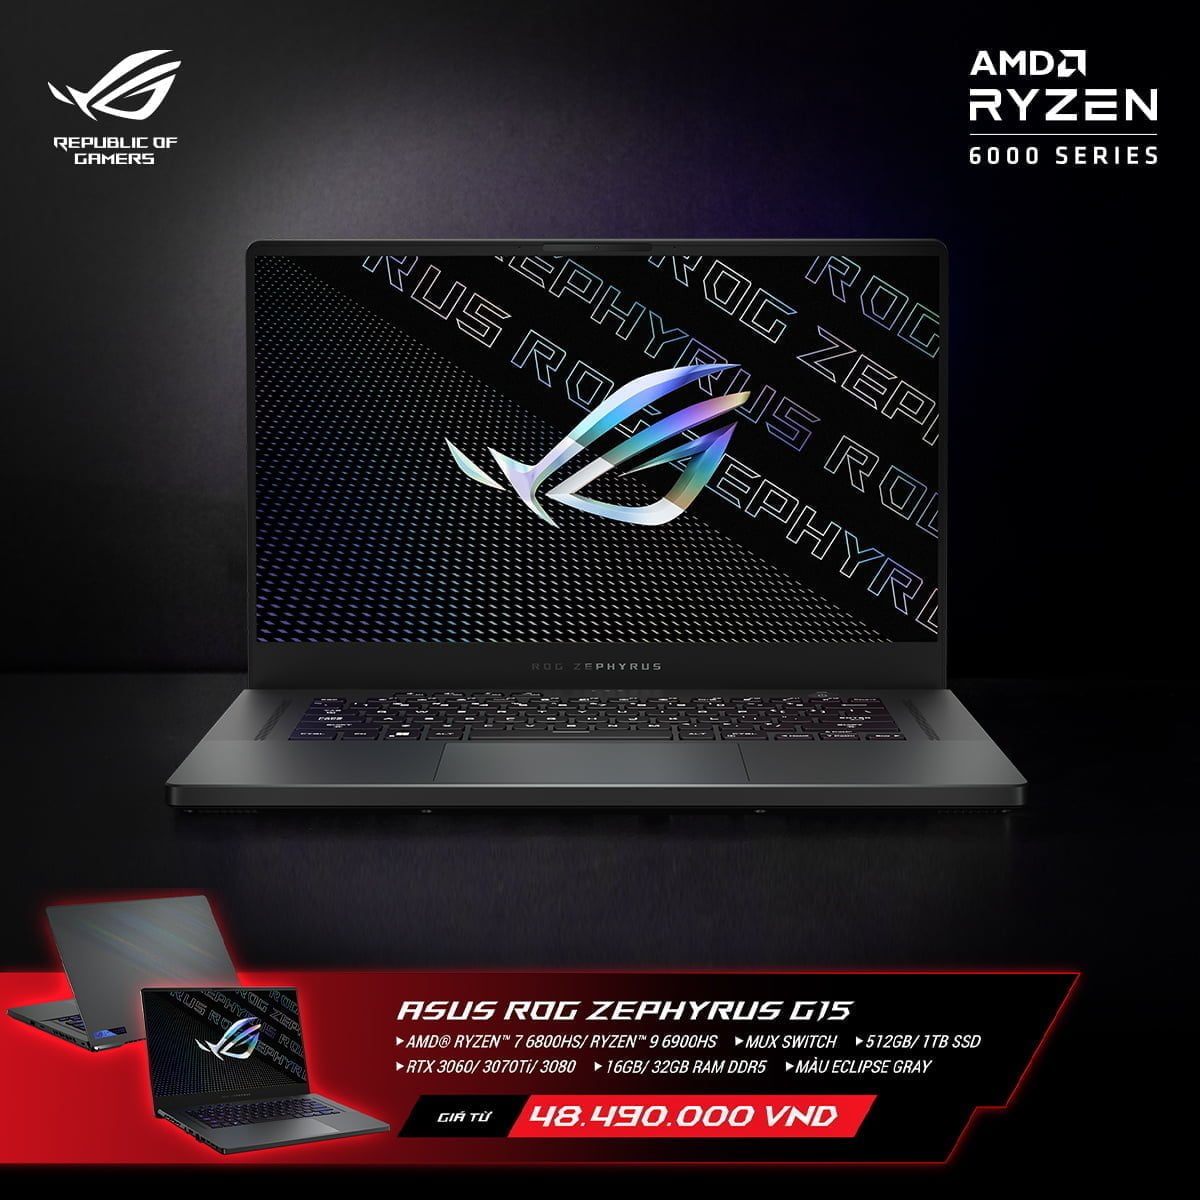 [PR] ASUS ROG công bố loạt sản phẩm laptop mới nền tảng AMD Ryzen 6000 Series tại thị trường Việt Nam - Image 12